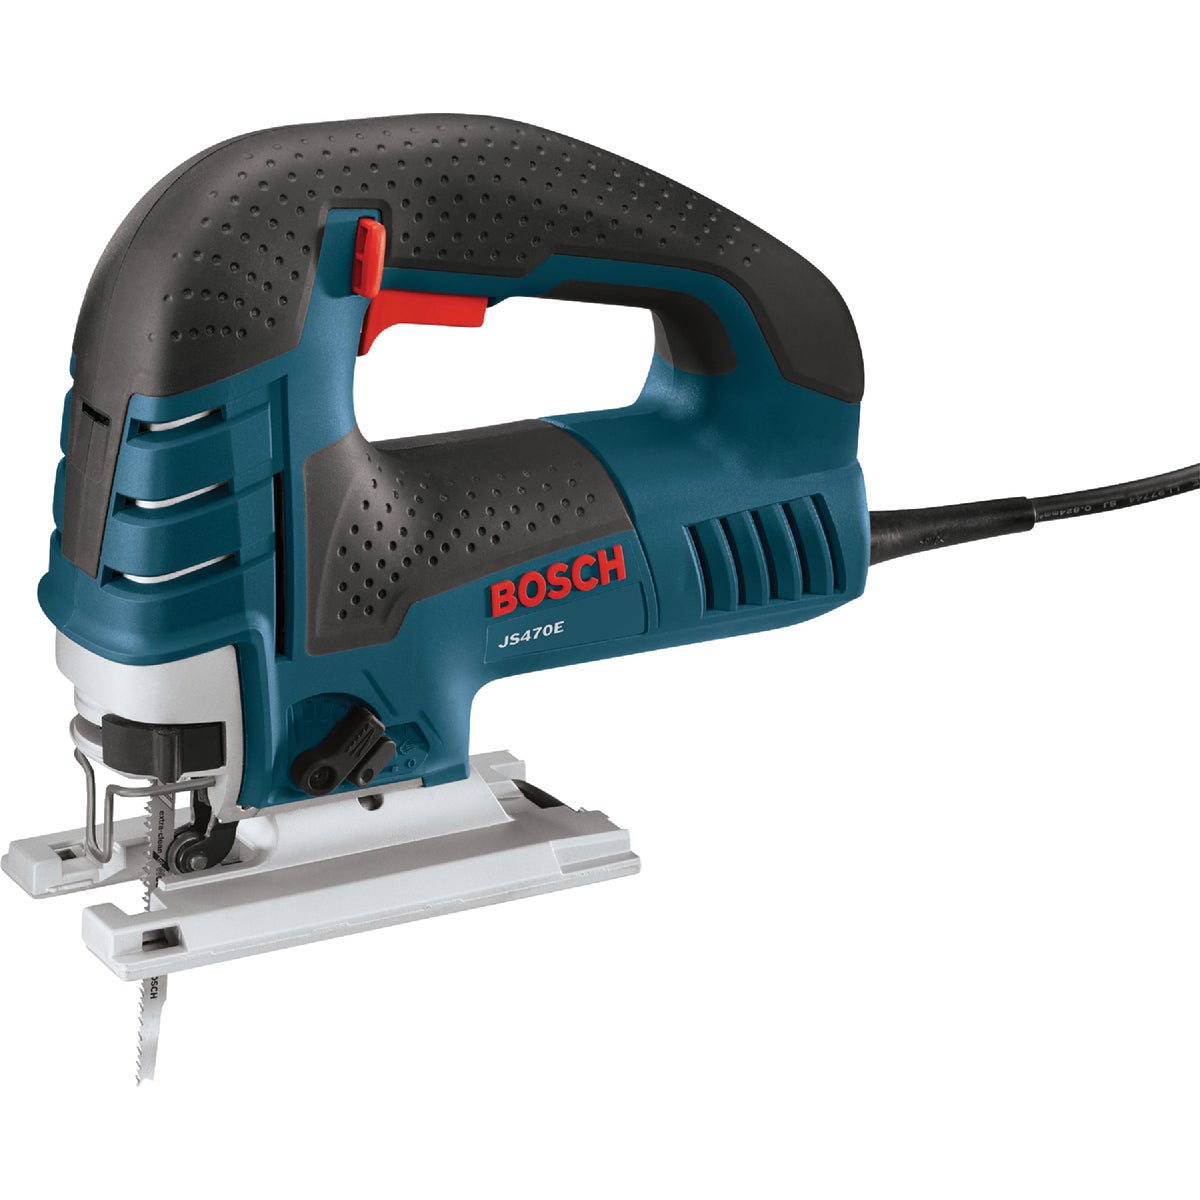 Item 310130, The Bosch JS470E Top-Handle Jig Saw provides unsurpassed cut precision.